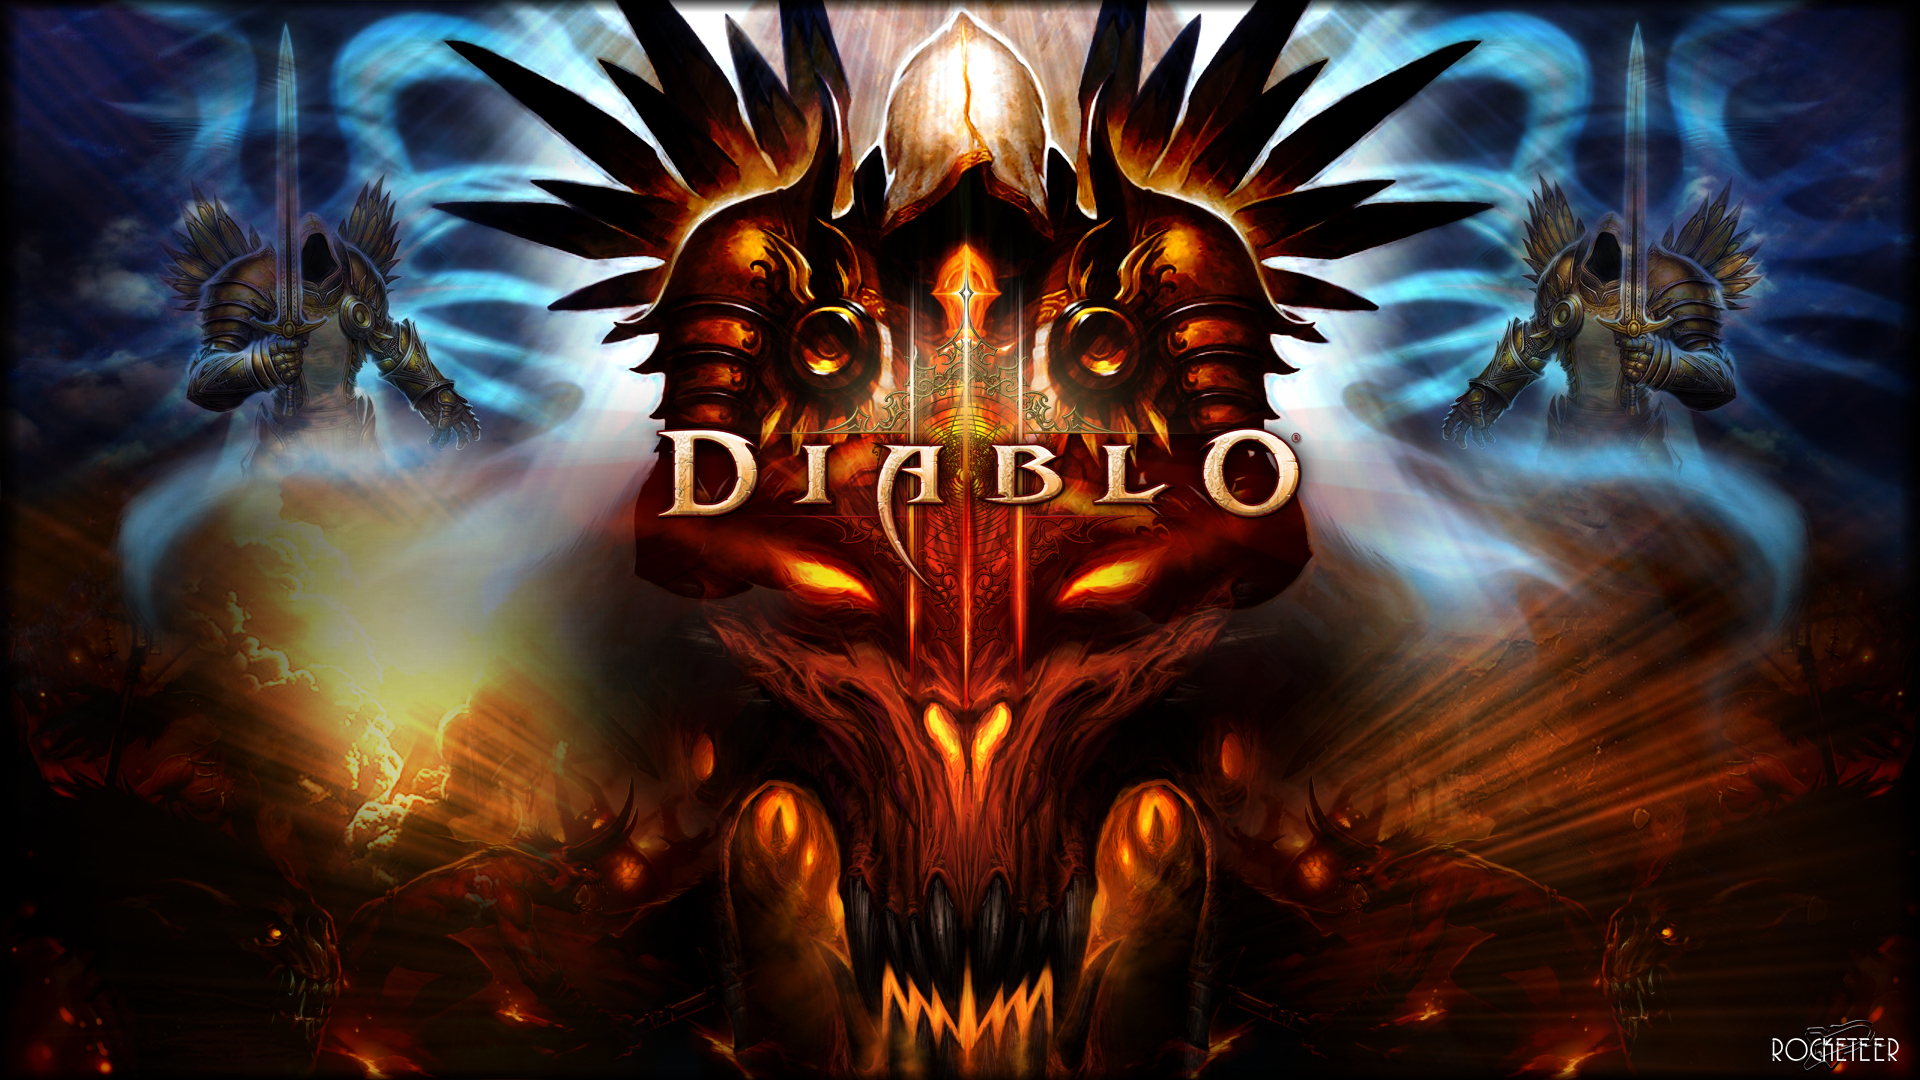 Free Download Diablo 3 Fonds Dcran De Fans Diablo 3 19x1080 For Your Desktop Mobile Tablet Explore 48 Diablo 3 Wallpapers Hd Diablo 3 Hd Wallpaper 19x10 Diablo Iii Wallpaper Diablo 3 Hd Wallpapers Widescreen